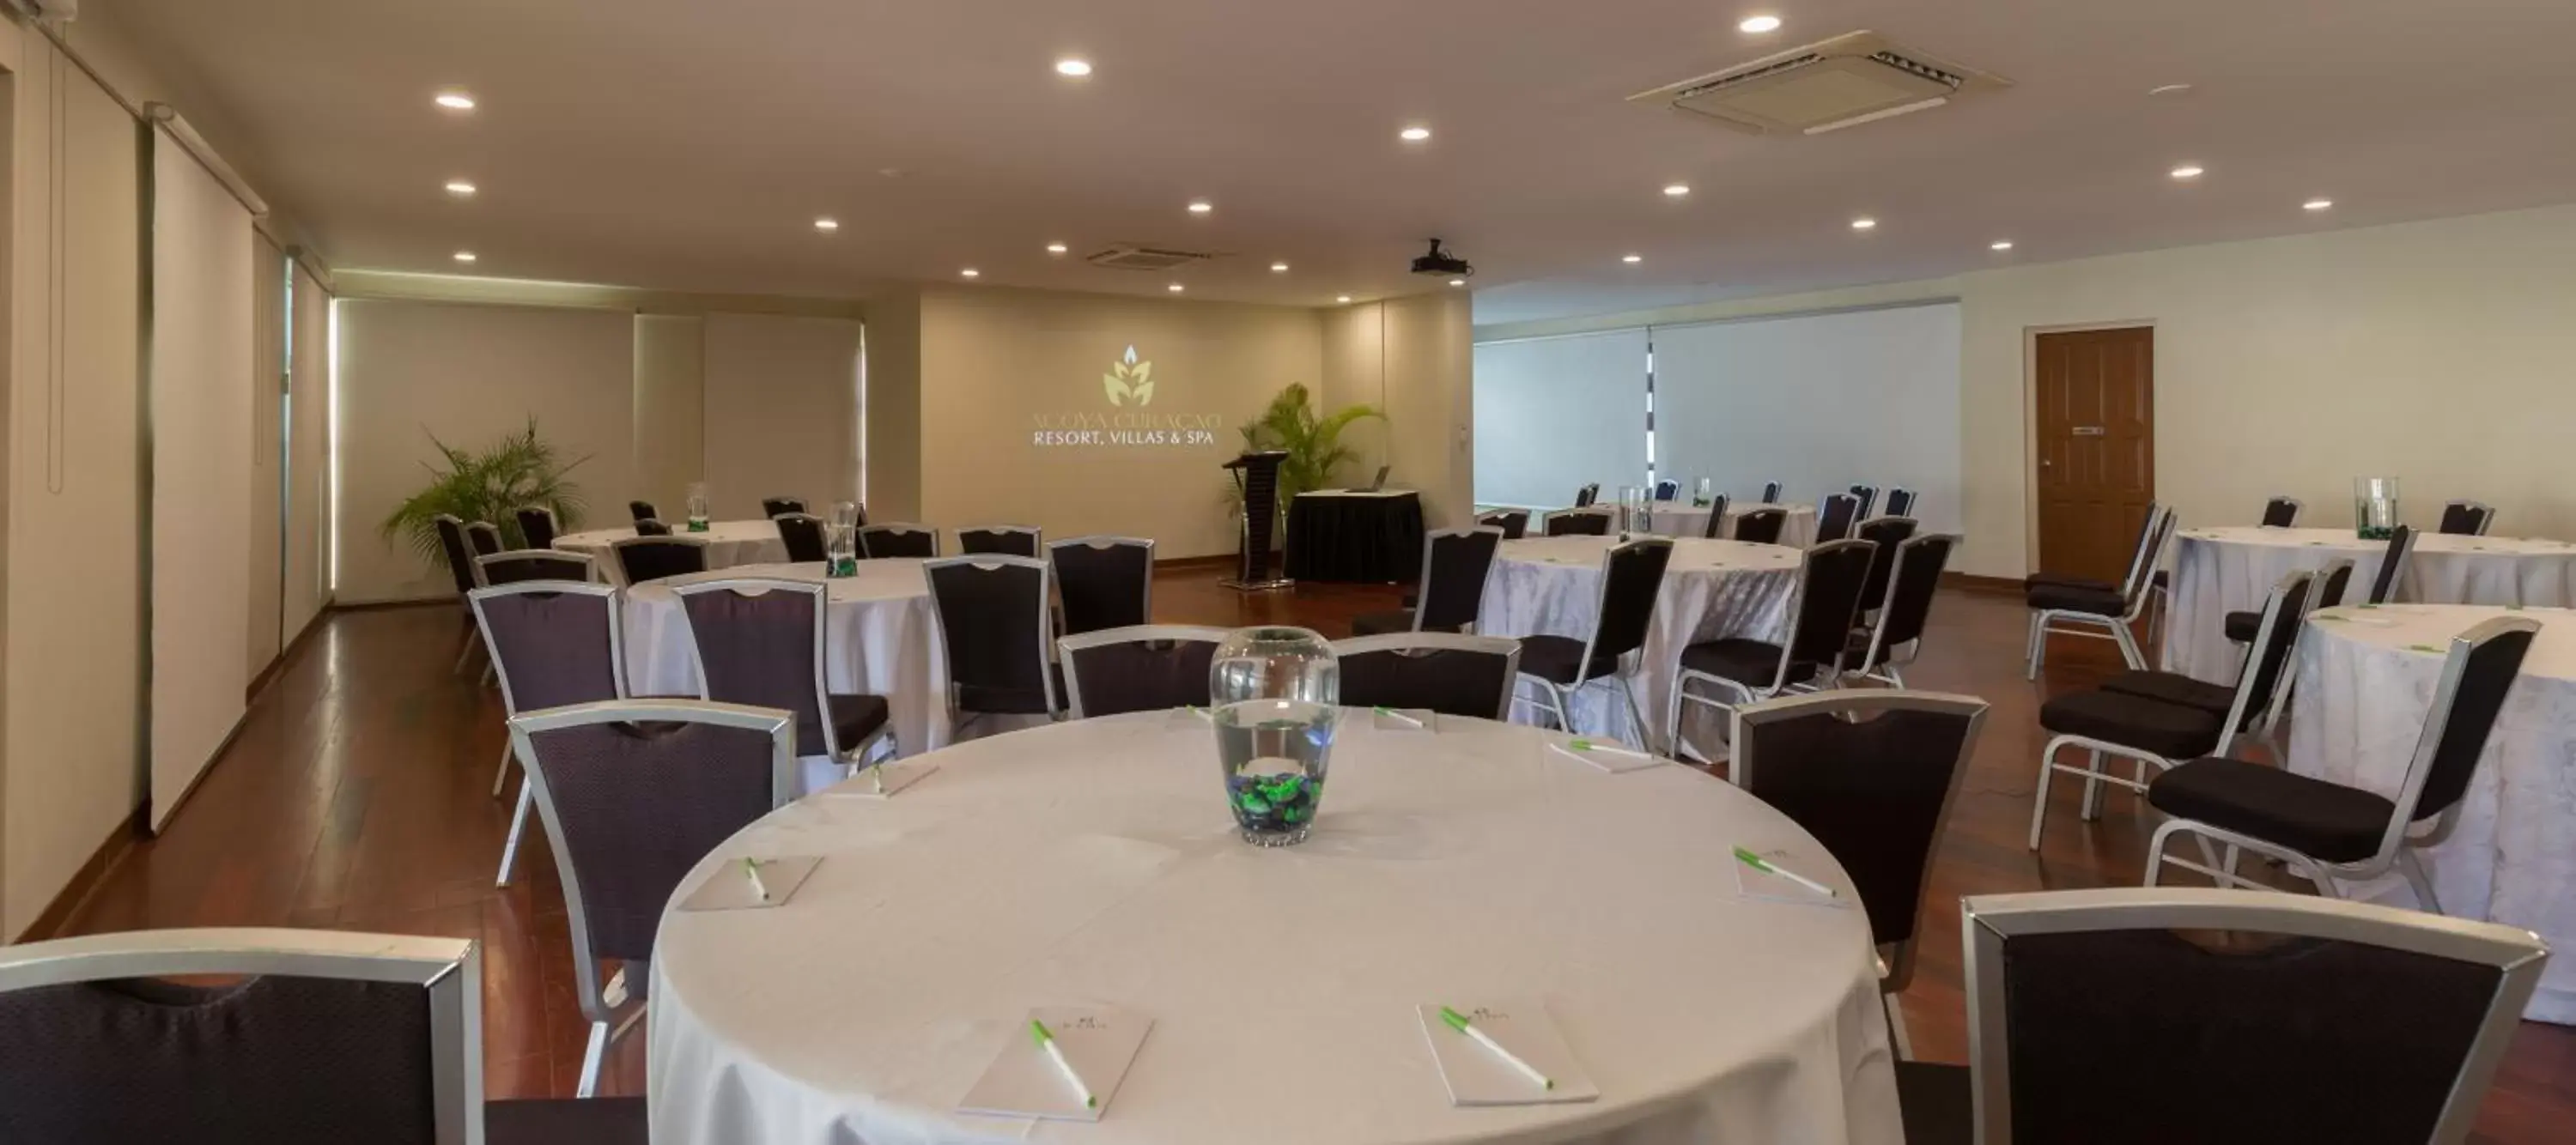 Banquet/Function facilities in Acoya Curacao Resort, Villas & Spa